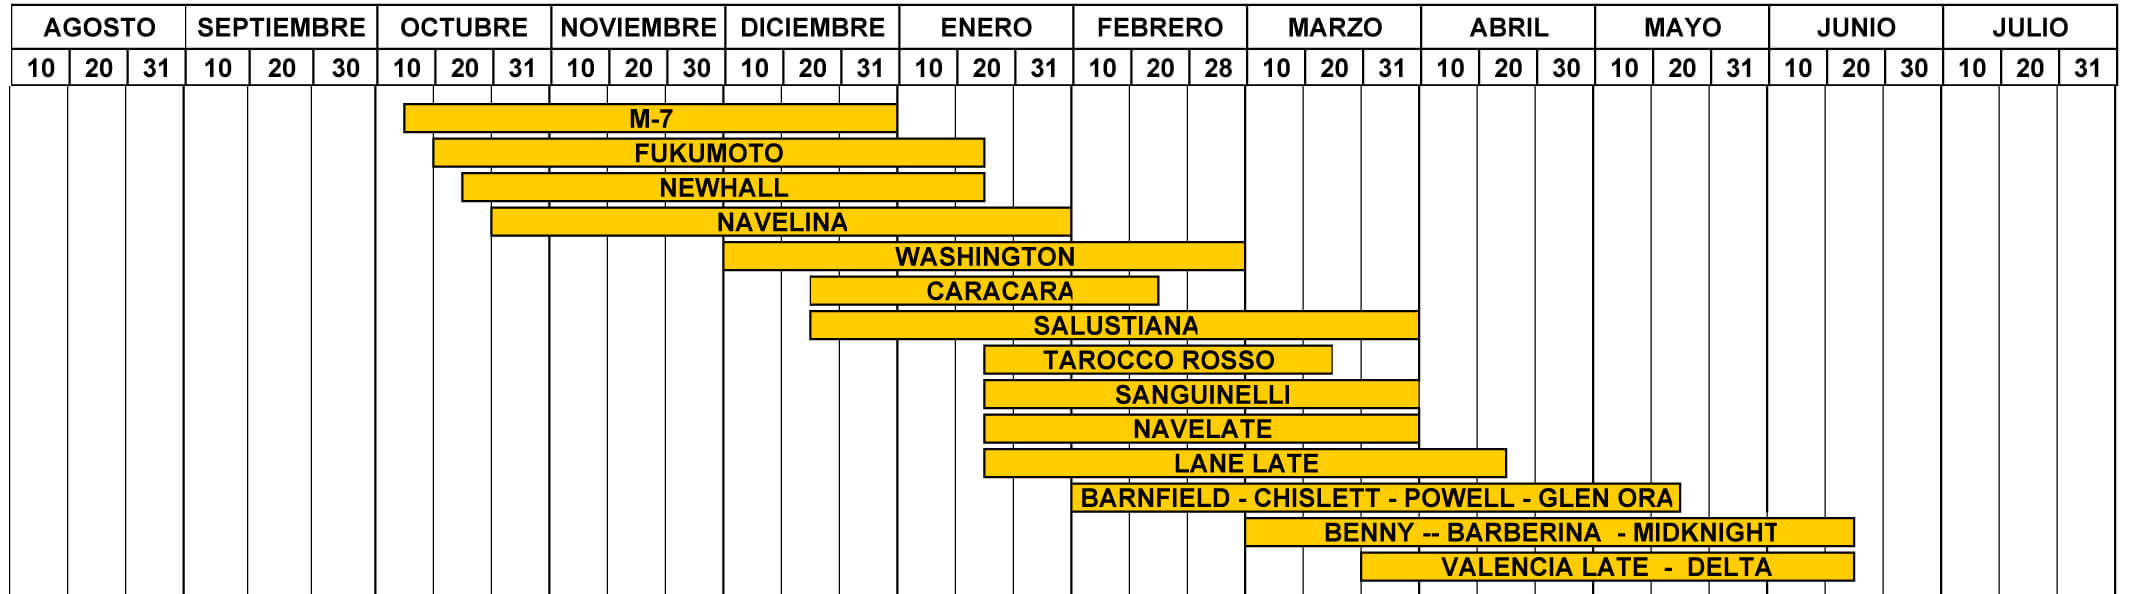 Maduración y calendario de cosechas naranjas valencianas